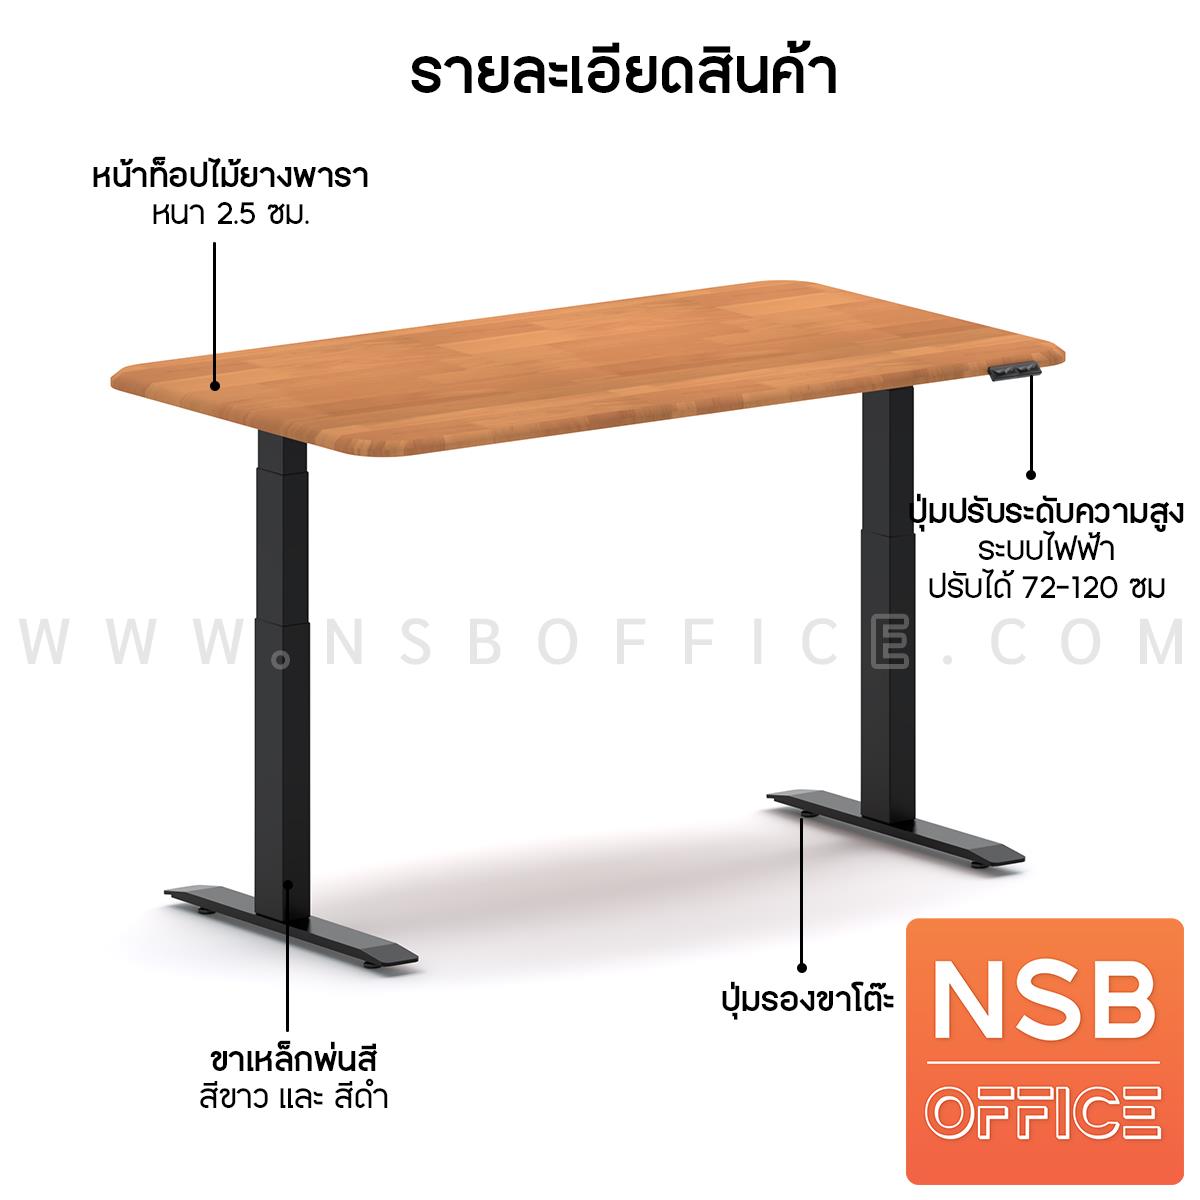 โต๊ะทำงาน Sit 2 Stand ระบบไฟฟ้า  รุ่น Civic (ซีวิค)  ขนาด 150W, 180W cm. หน้าท็อปไม้ยางพารา